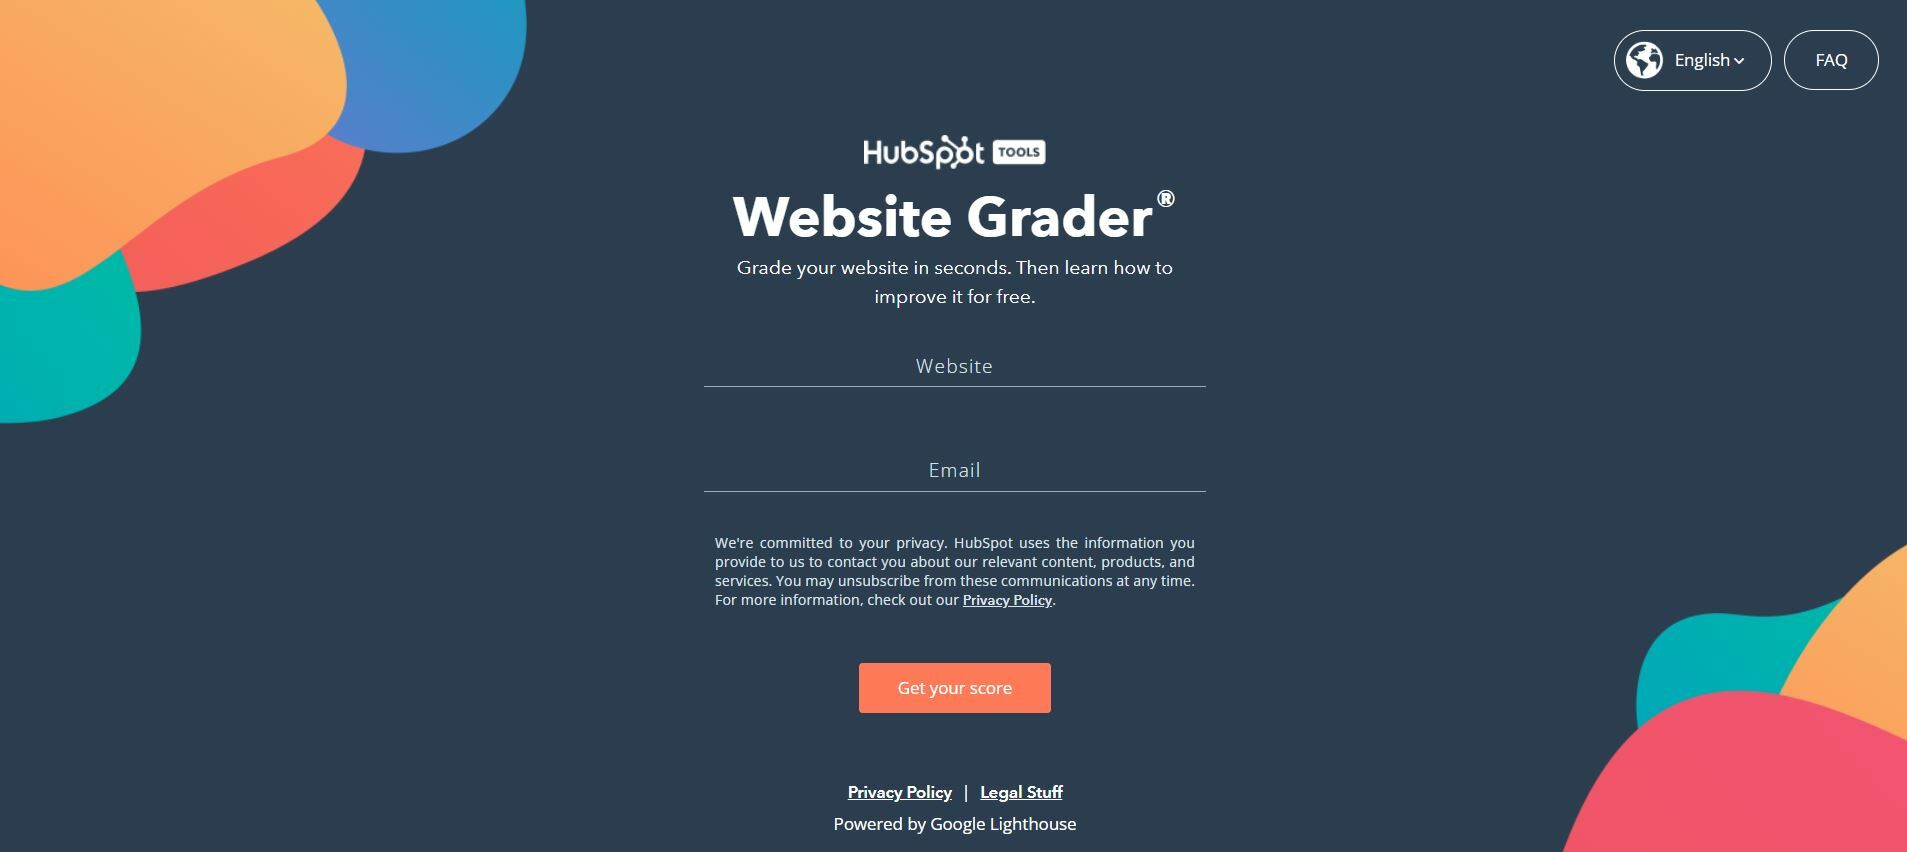 HubSpot Website Grader.